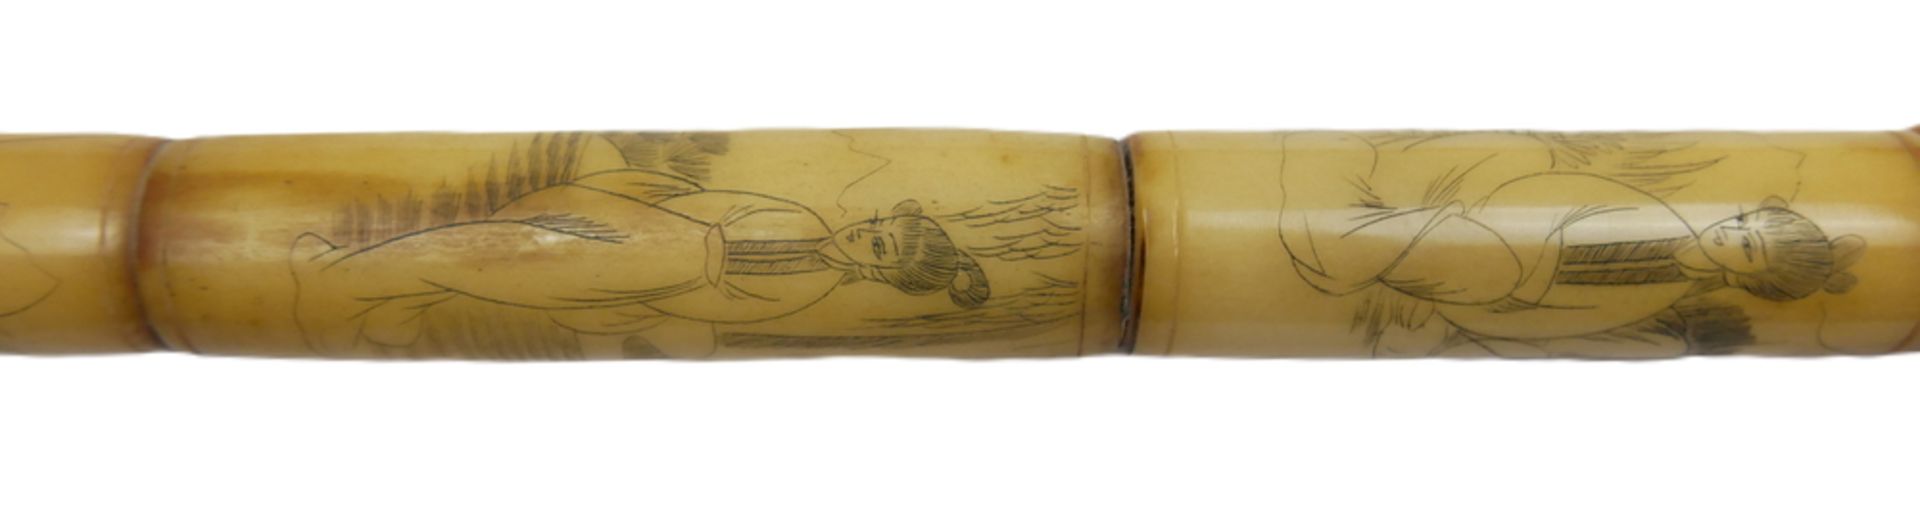 Chinesische Opiumpfeife aus Knochen, geschnitzt und verziert mit Geishas. Länge ca. 54 cm - Image 2 of 3